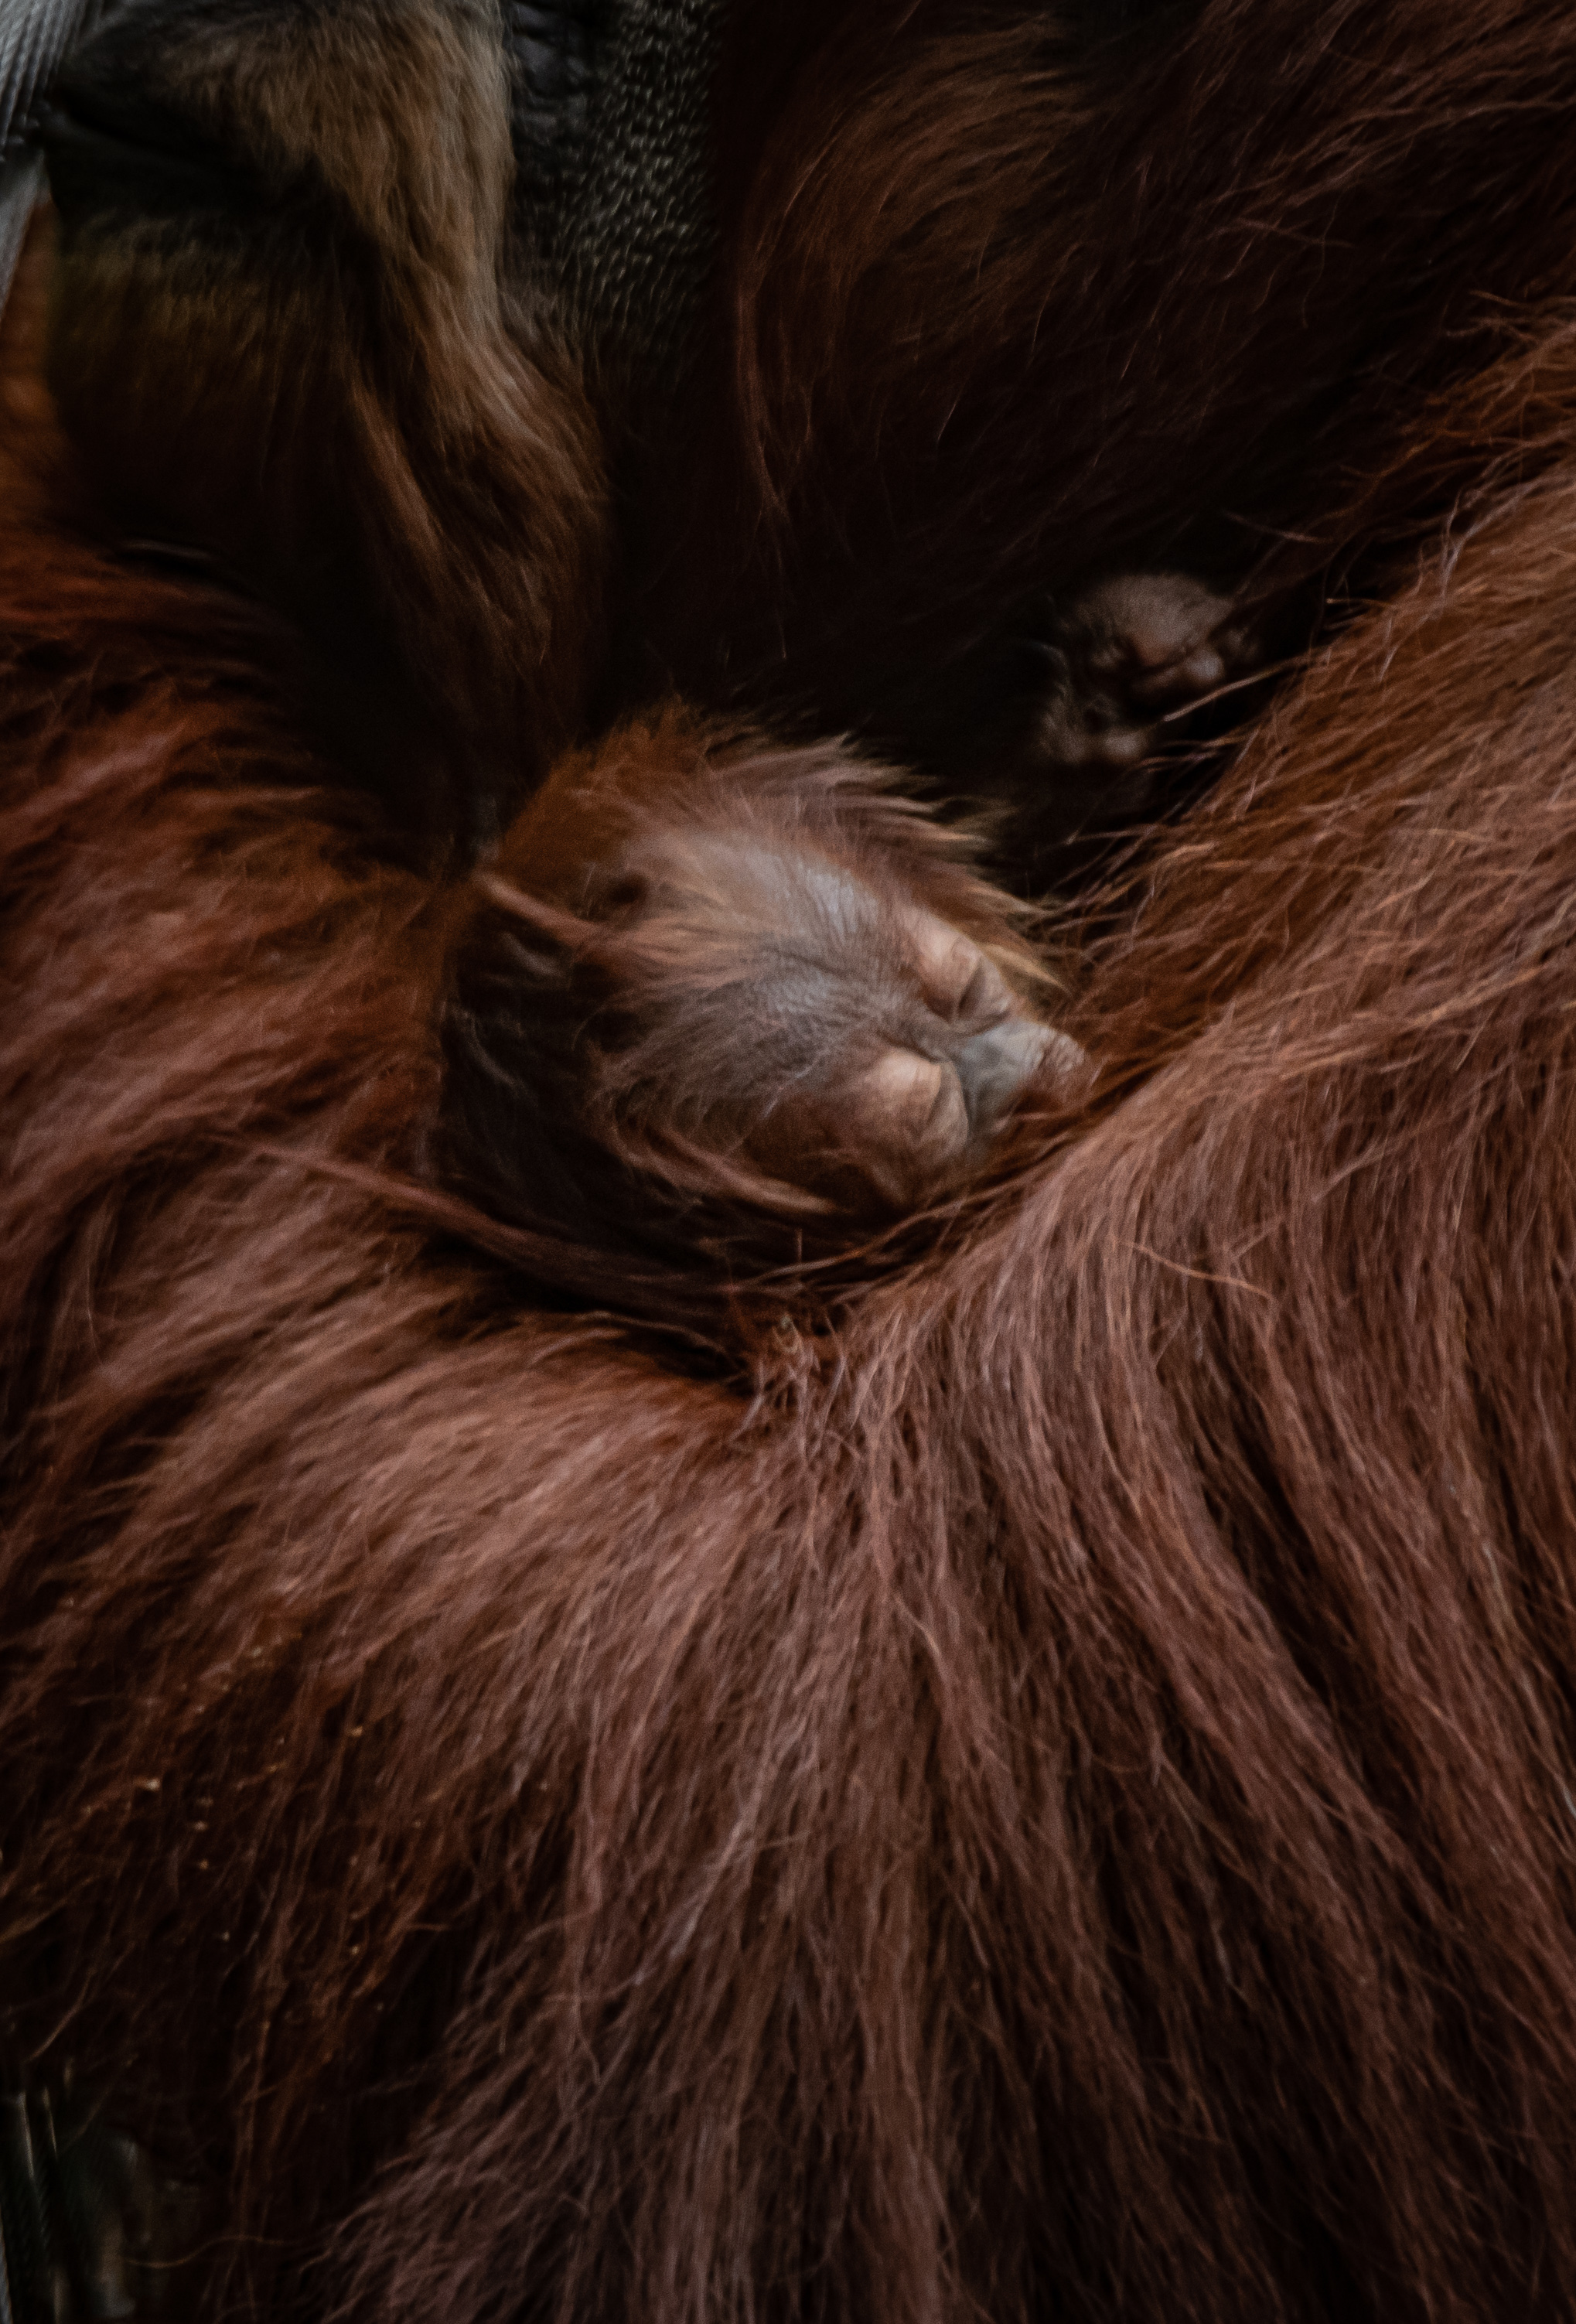 A critically endangered orangutan has been born at Chester Zoo.